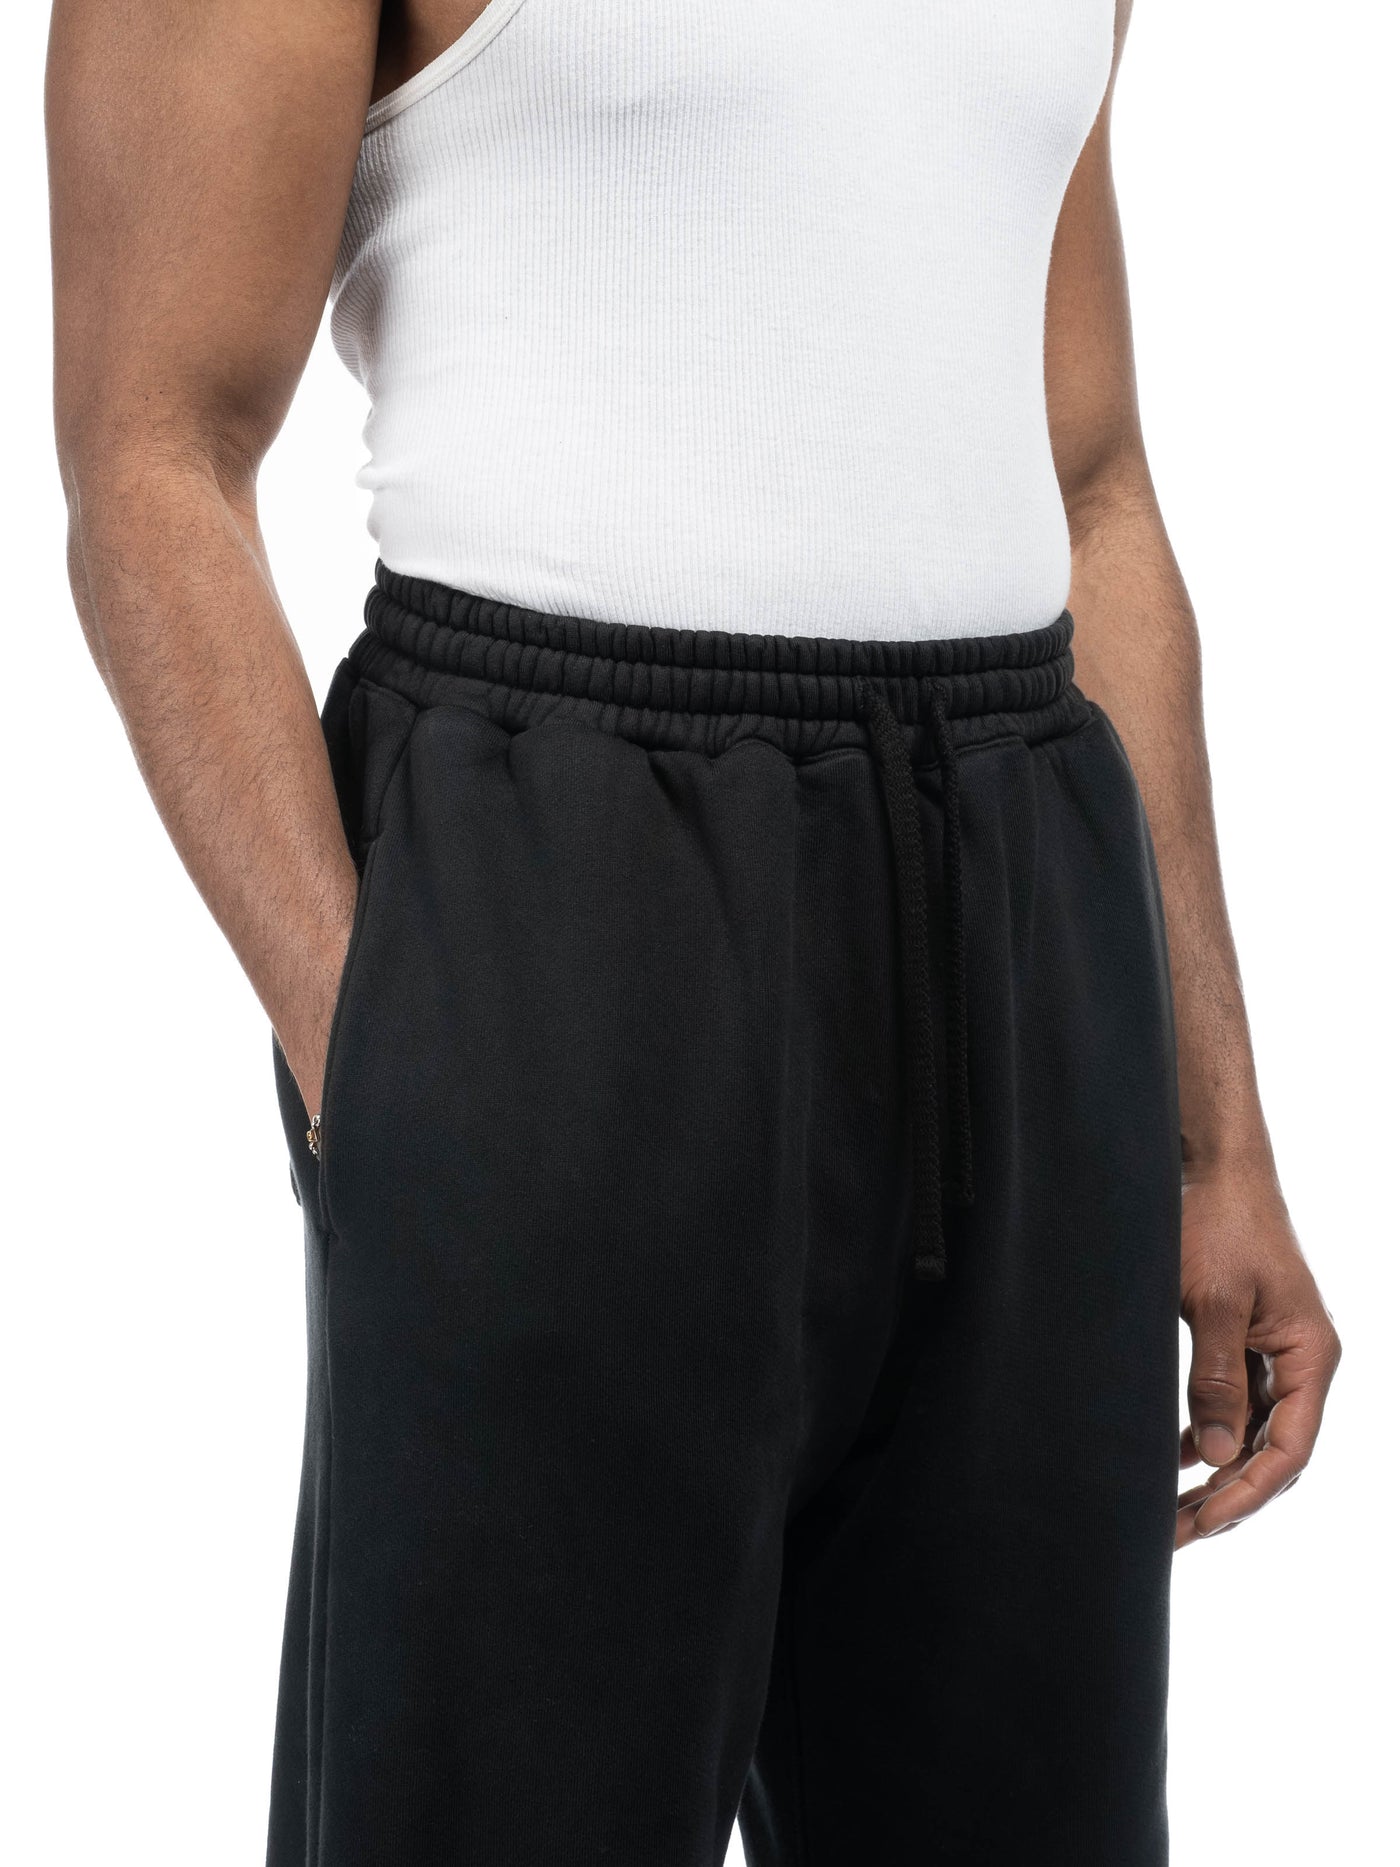 Basics Sweatpant - Aged Black